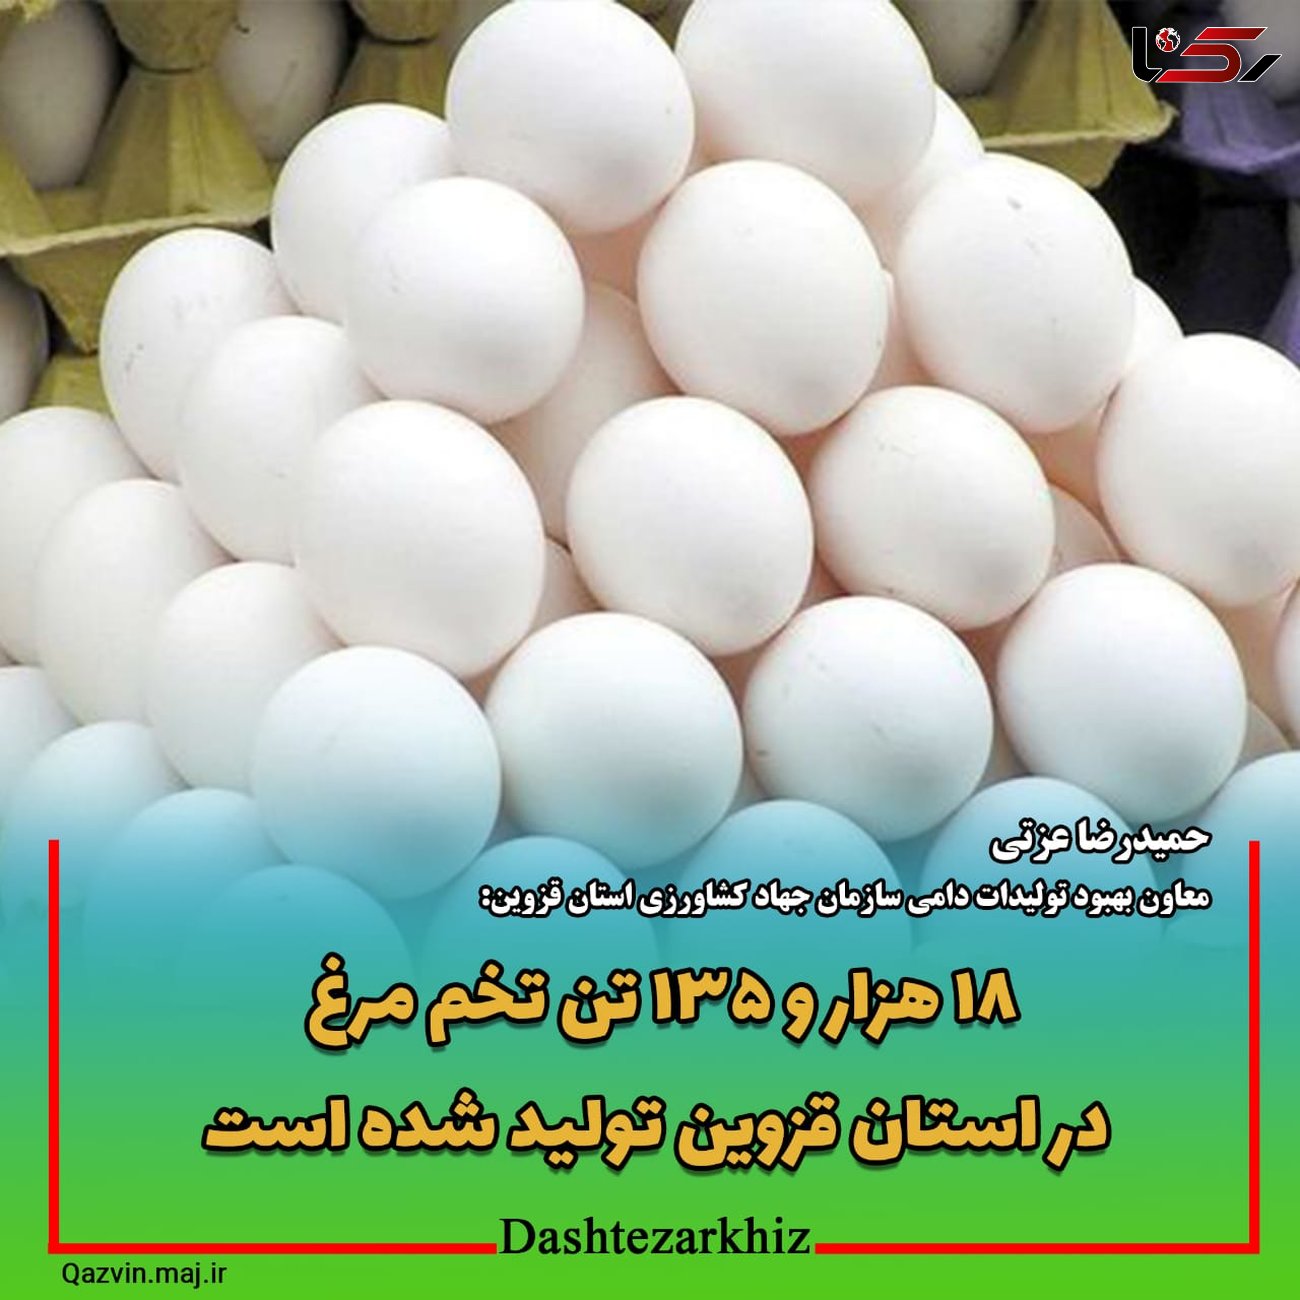  ۱۸ هزار و ۱۳۵ تن تخم مرغ در استان قزوین تولید شد